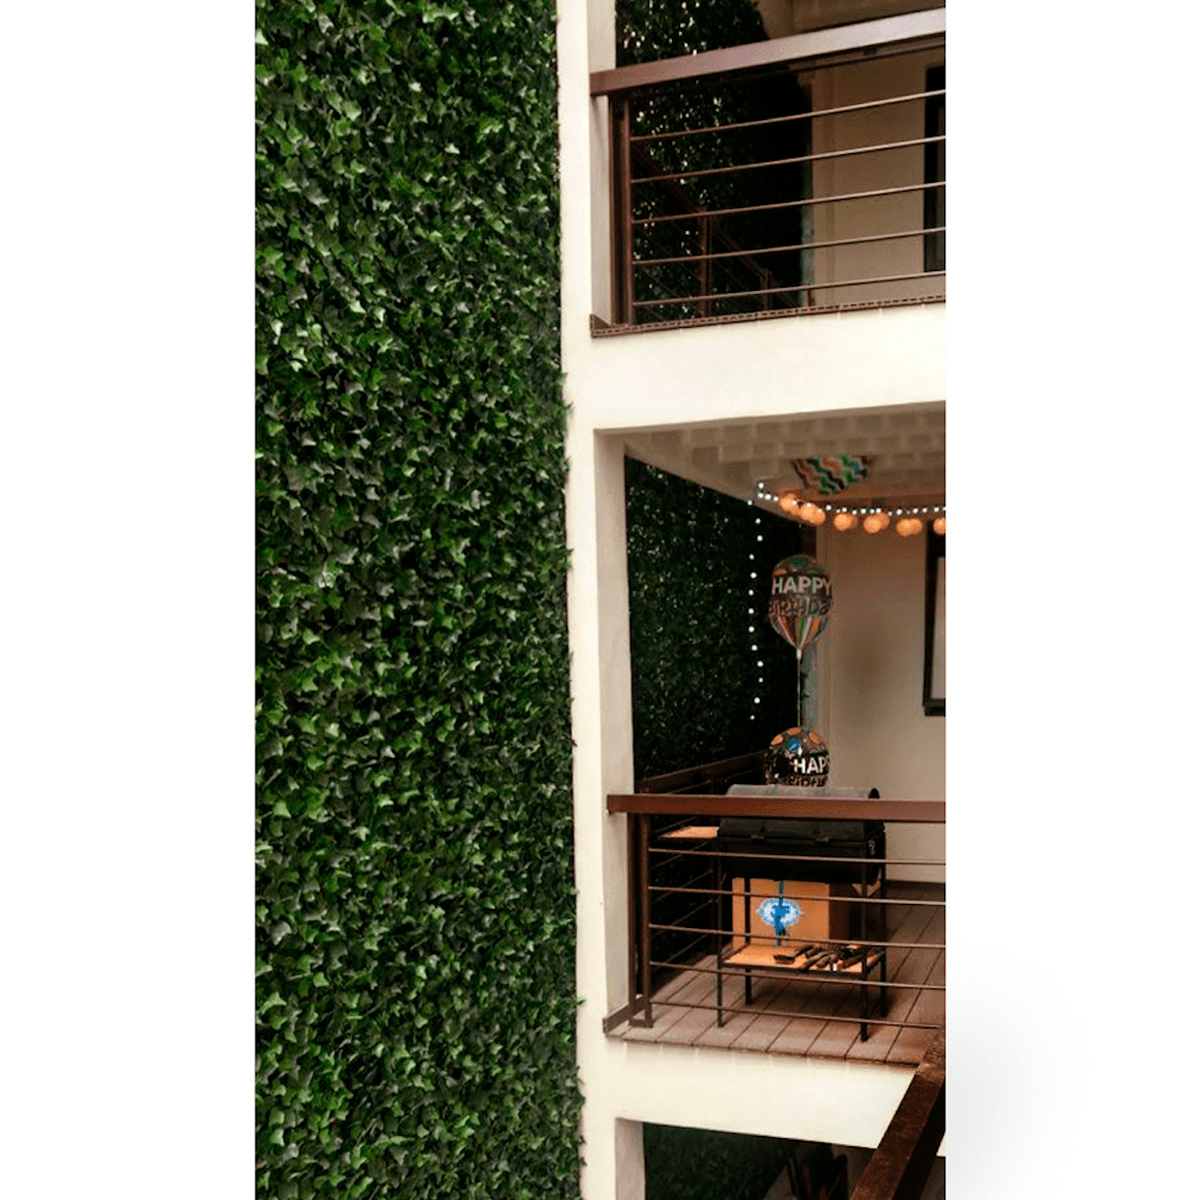 Greensmart Decor Artificial Ivy Wall Panels,Set of 4 (MZ- 8041)